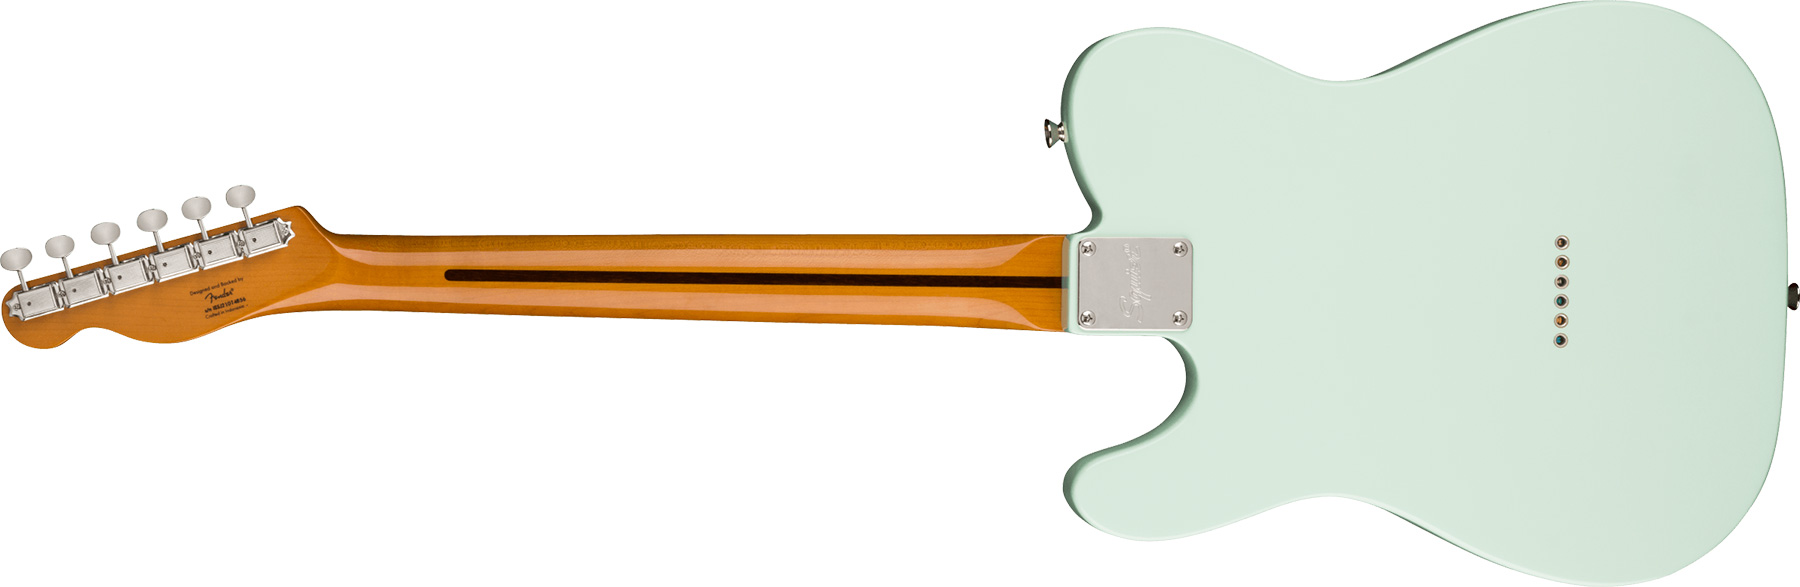 Squier Tele '50s Parchment Pickguard Classic Vibe Fsr 2s Ht Mn - Sonic Blue - Tel shape electric guitar - Variation 1